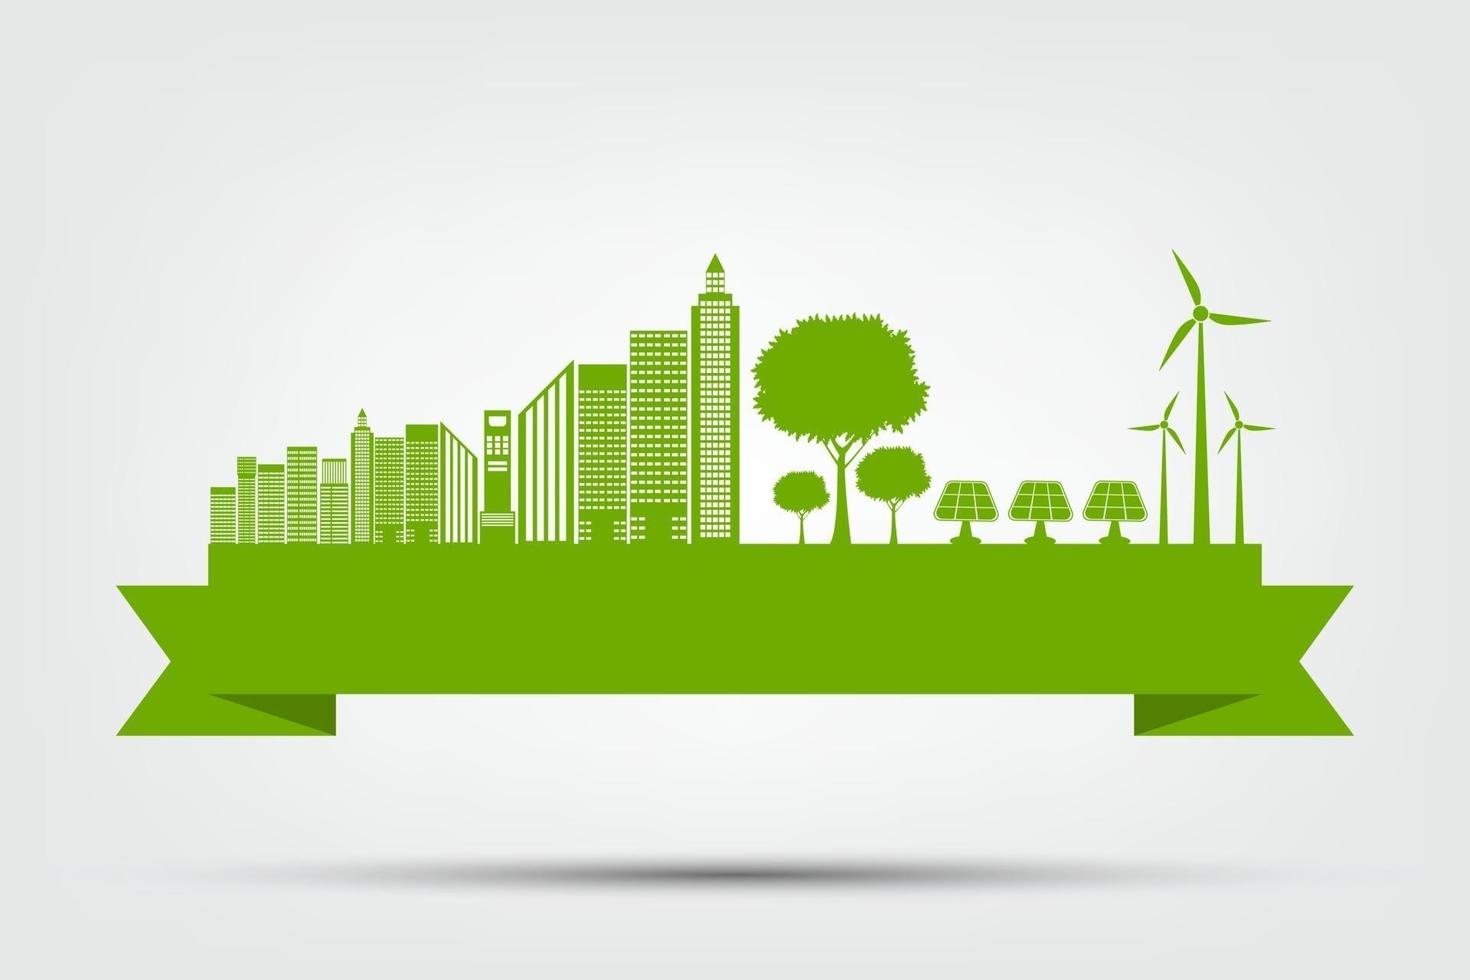 ekologi stadskoncept och miljö med miljövänlig idé vektor